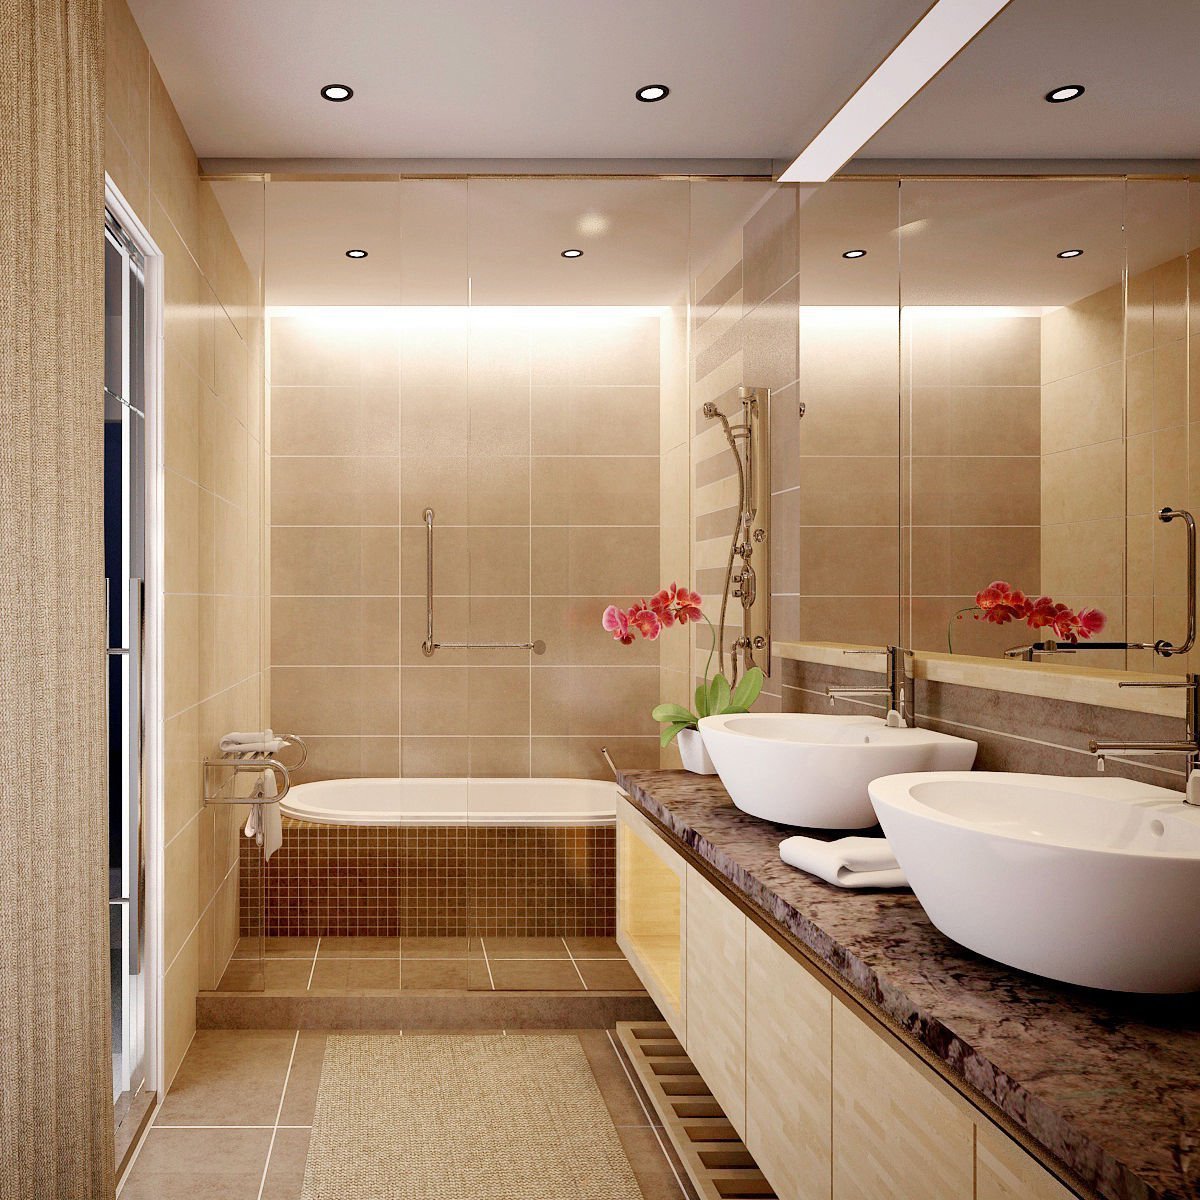 Phòng tắm nhỏ 3m2 sử dụng hài hòa với kiểu bồn tắm nhỏ tinh tế